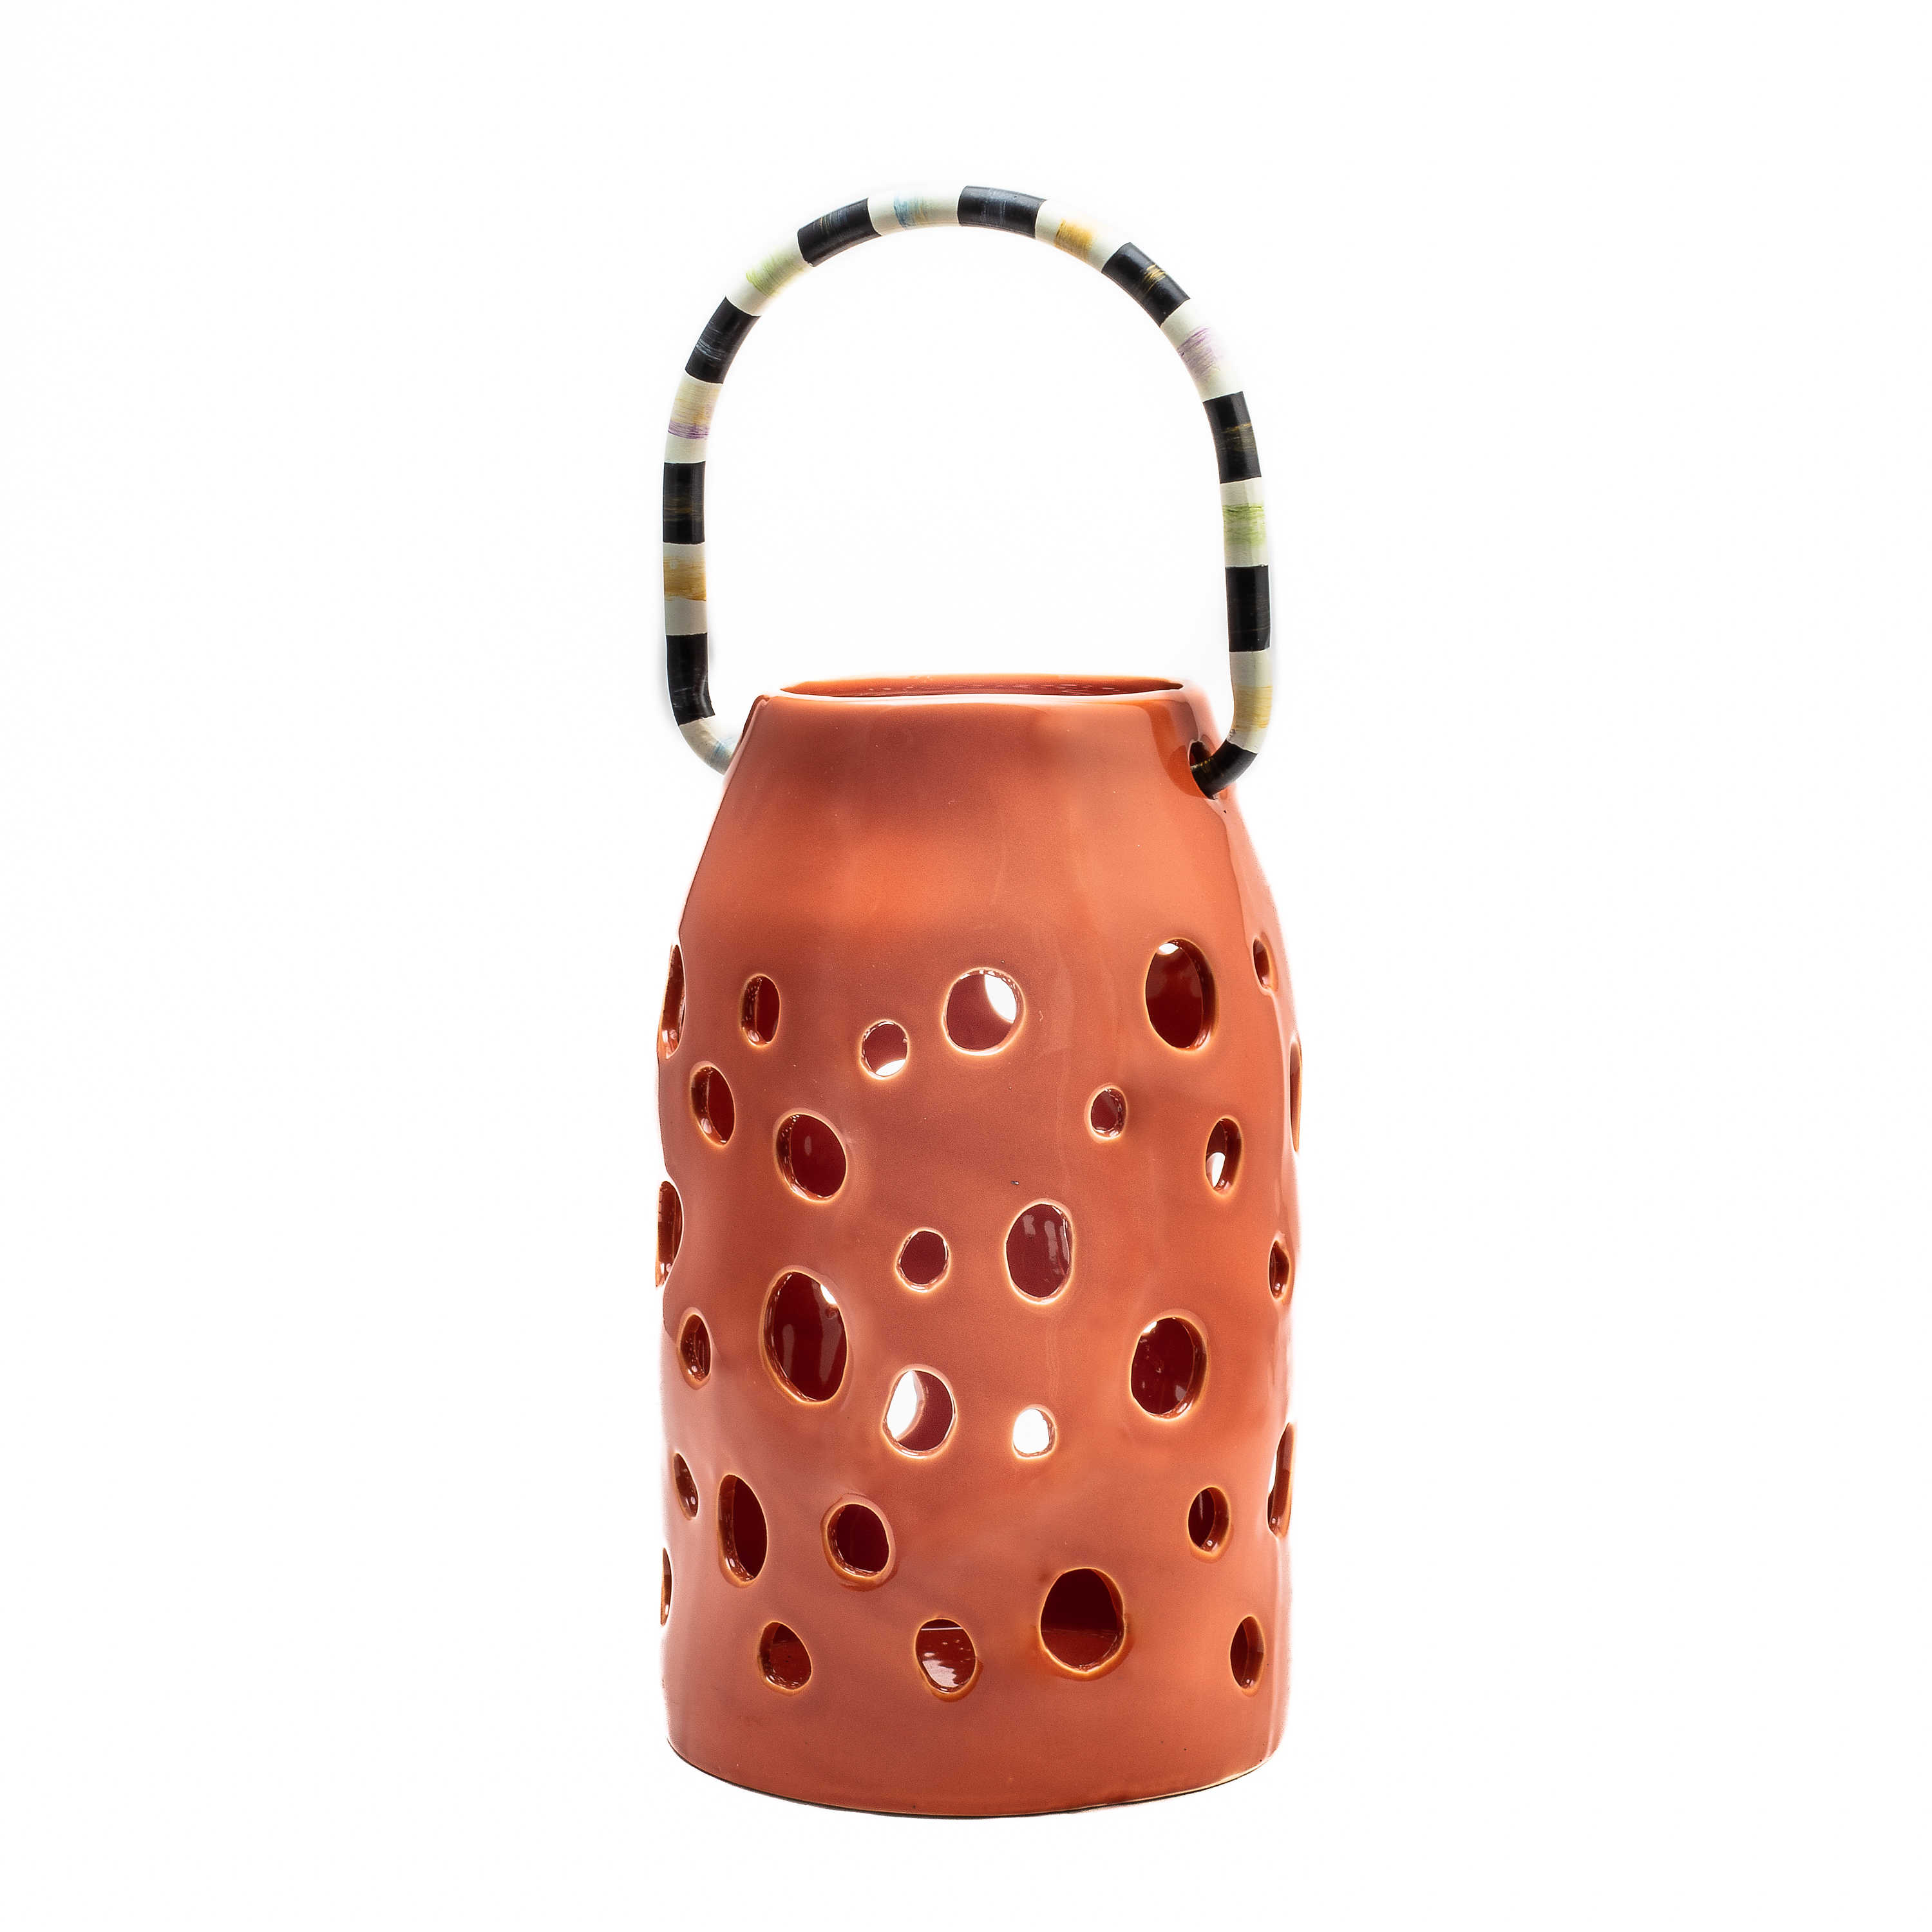 Avant Garden Ceramic Lantern - Tall mackenzie-childs Panama 0